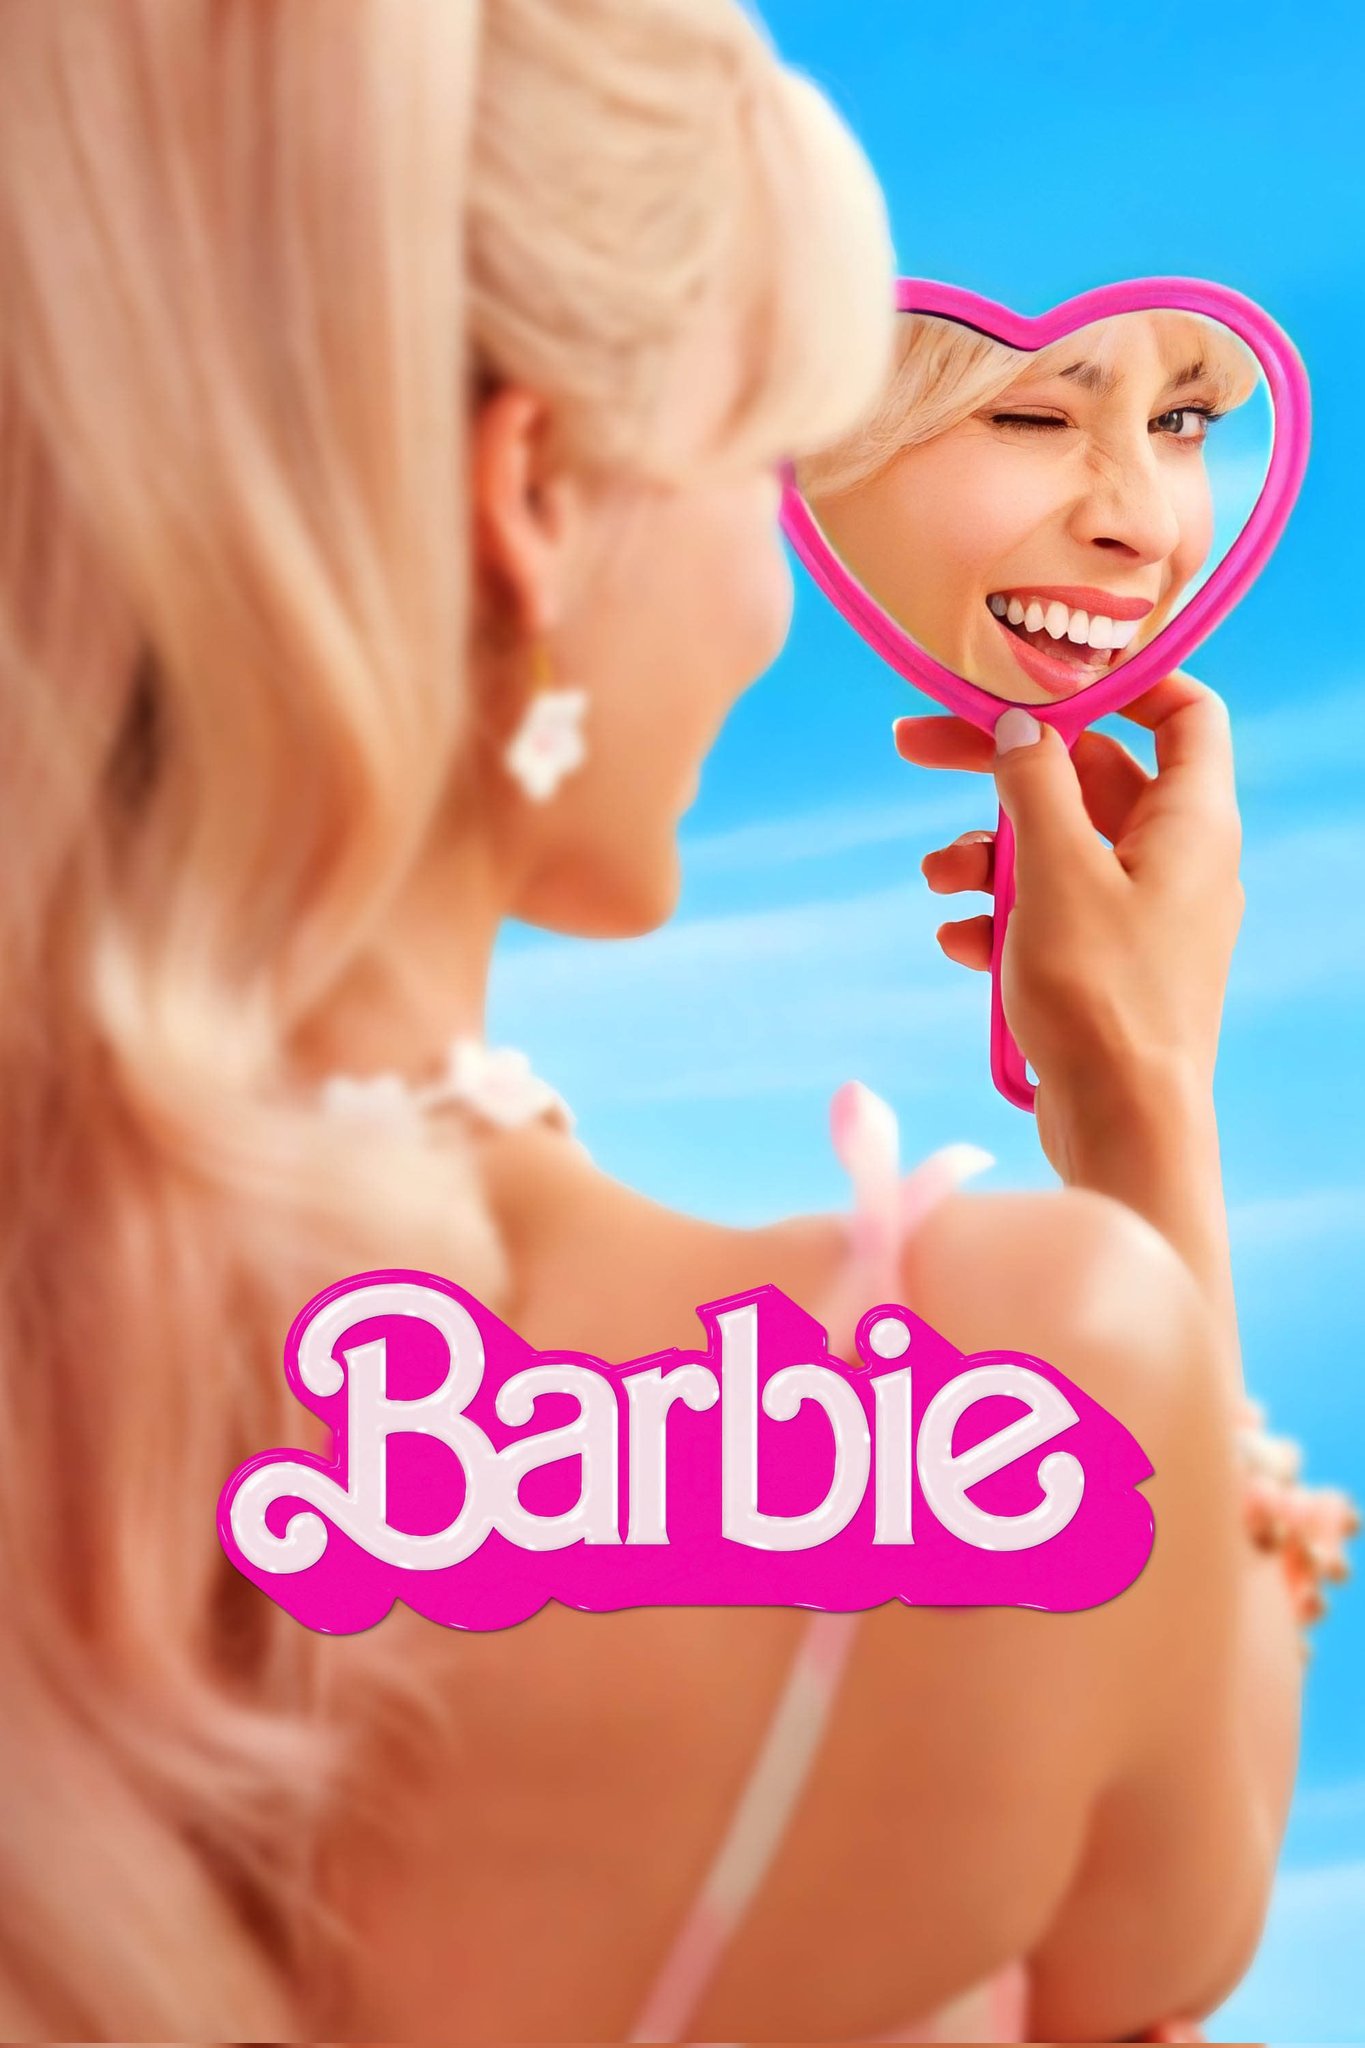 Portal Office on Twitter: "Hello, Barbie 👀🤩💖💖💖 #Barbie https://t.co/7tAY9aPkNs" /